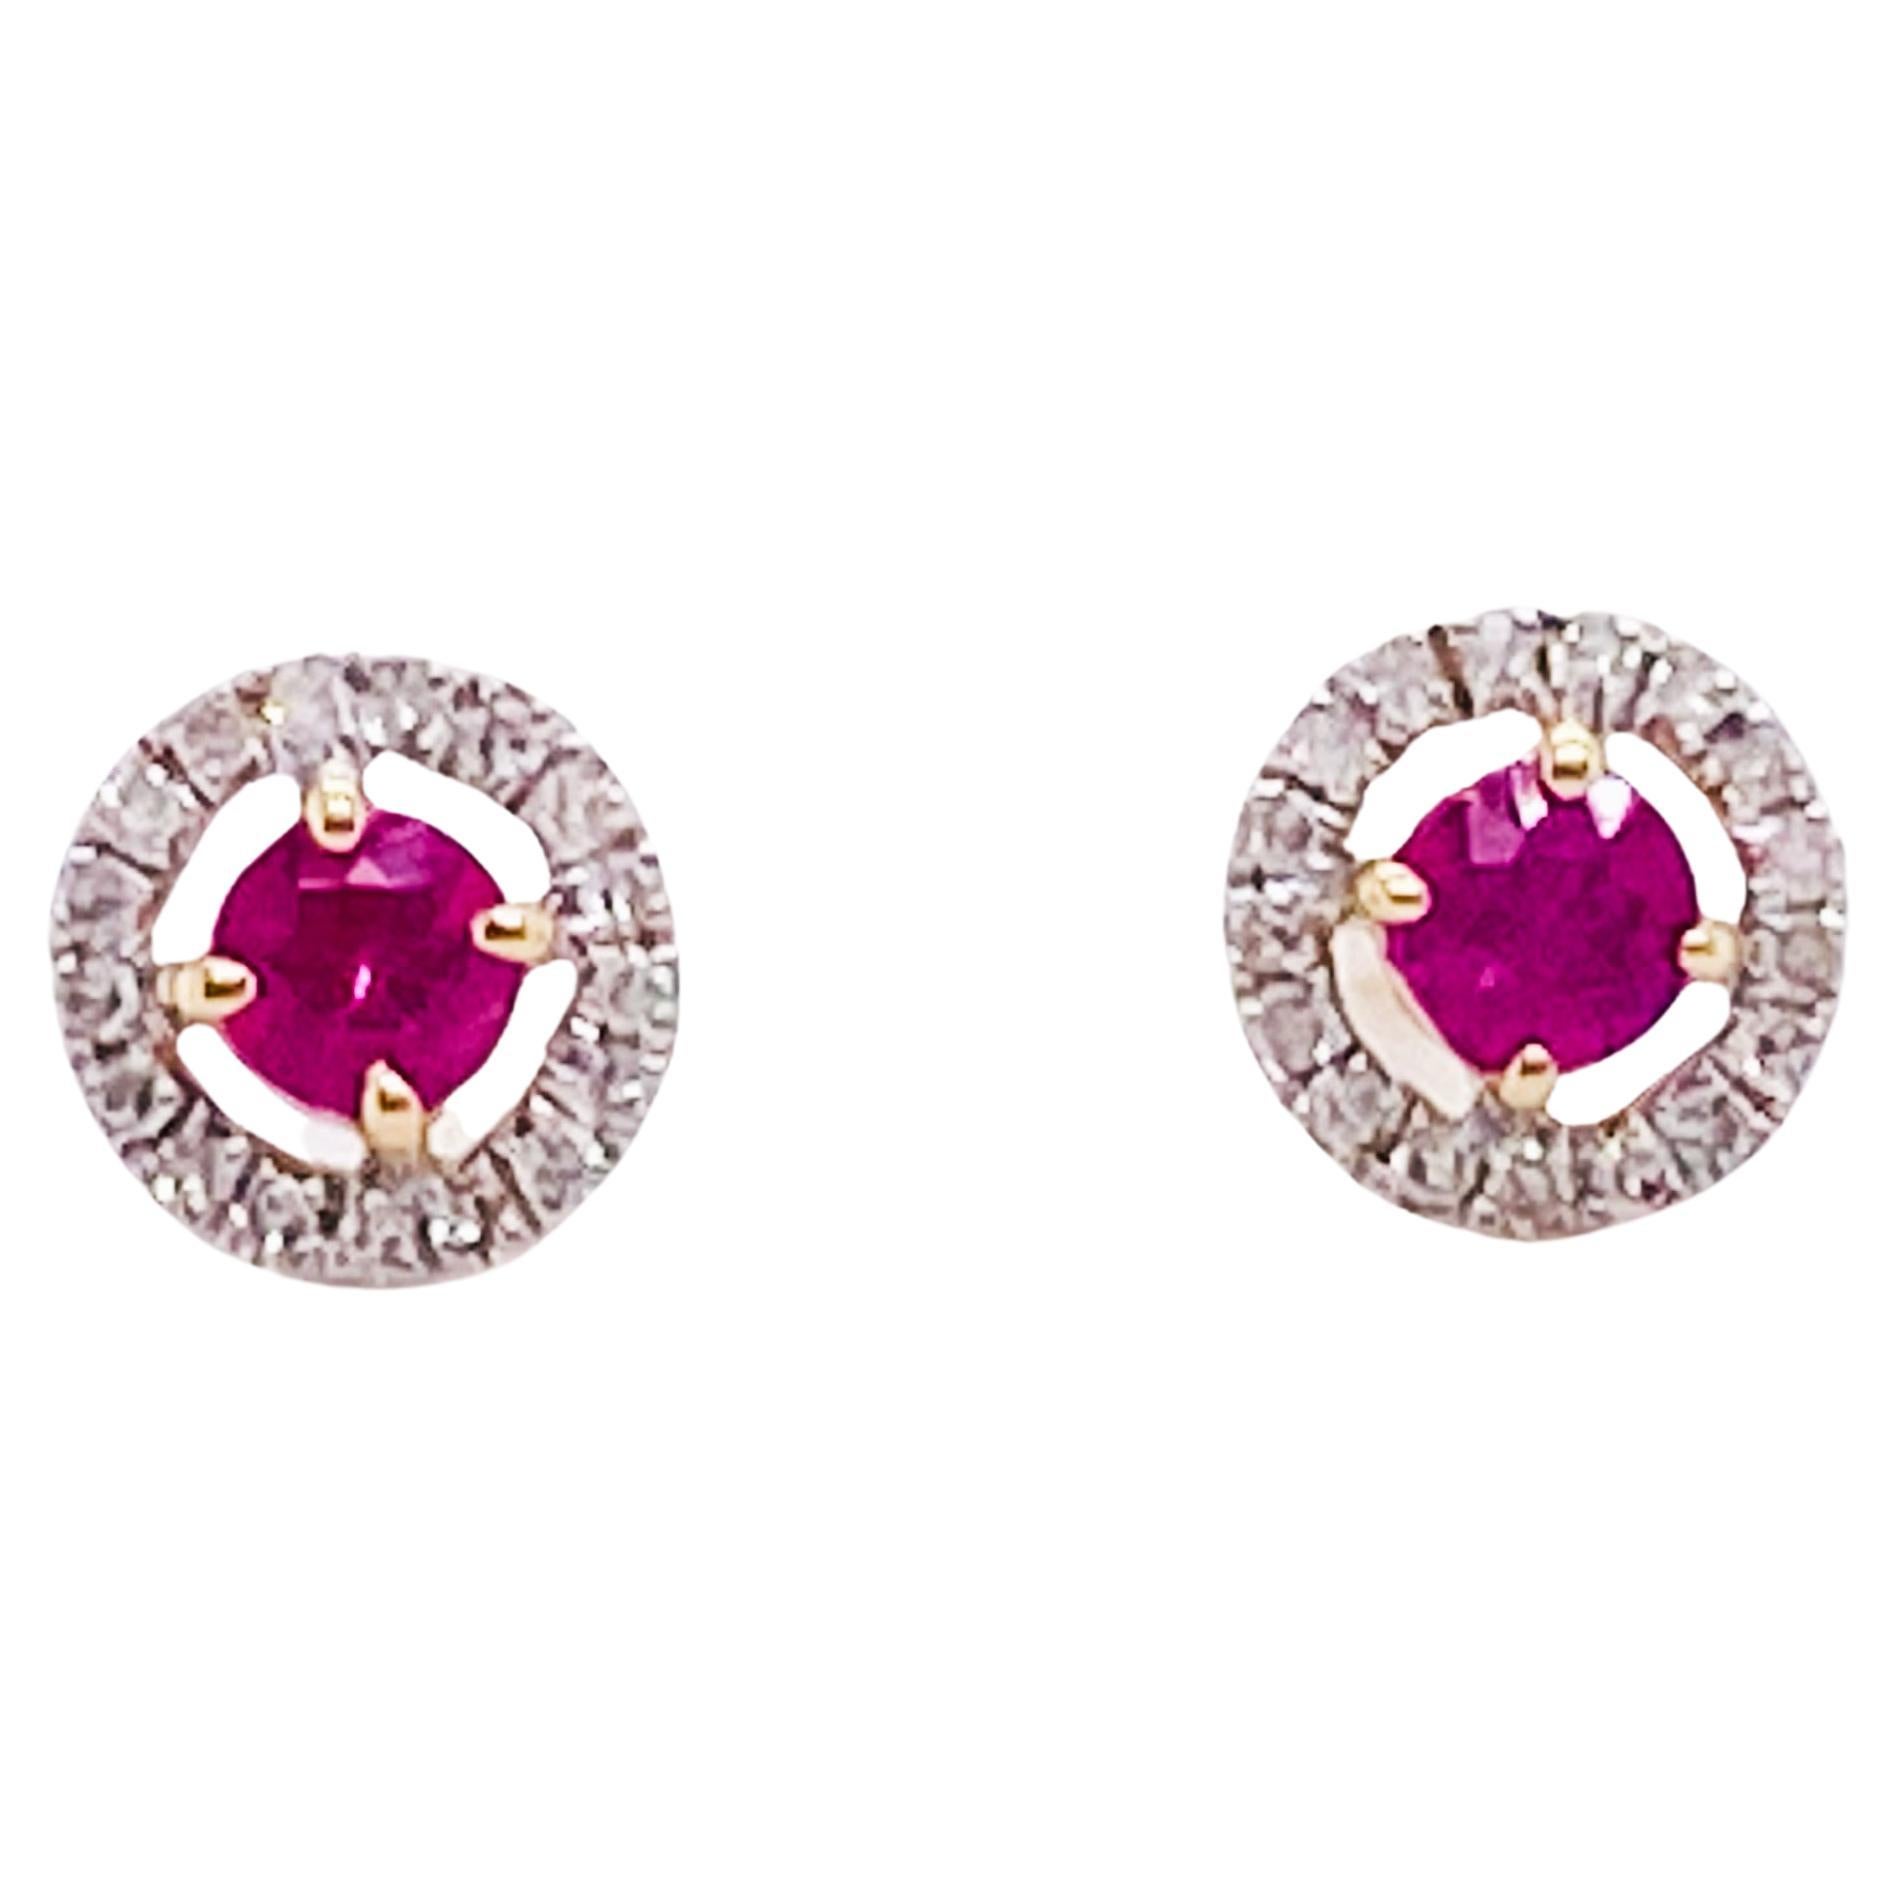 Ruby & Diamond Halo Earrings 14K Gold July Ruby Earring Studs, Minimalist Post